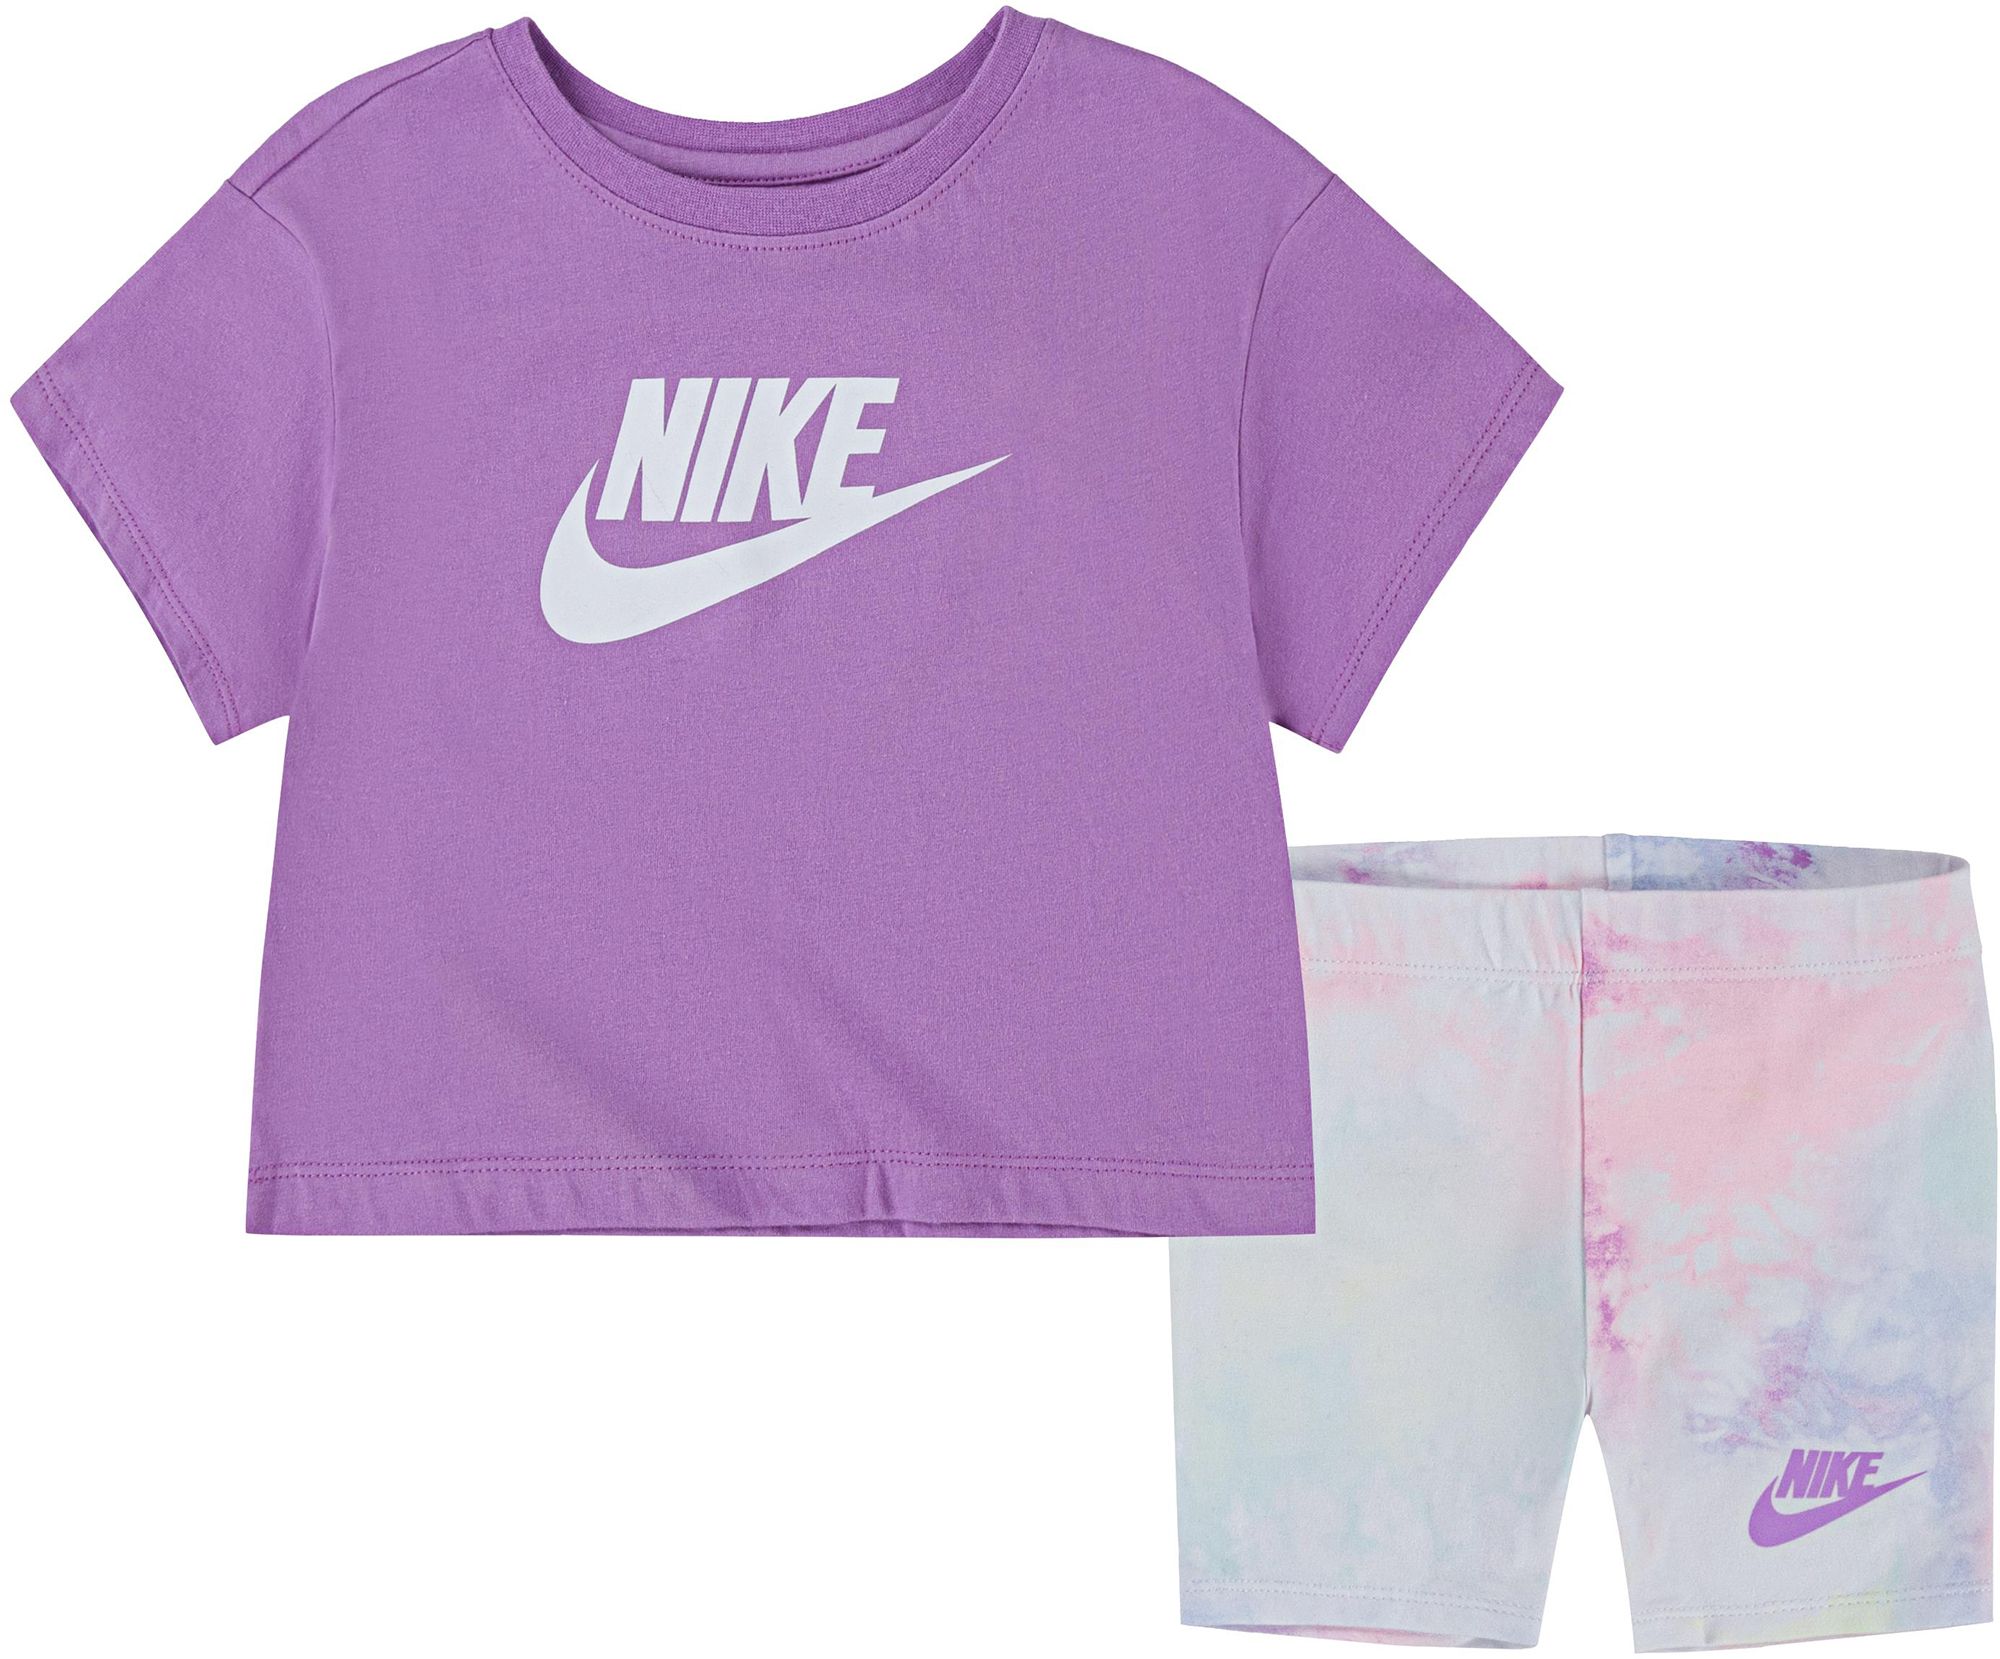 Nike / Toddler Girls' Ice Dye Box T-Shirt And Shorts Set